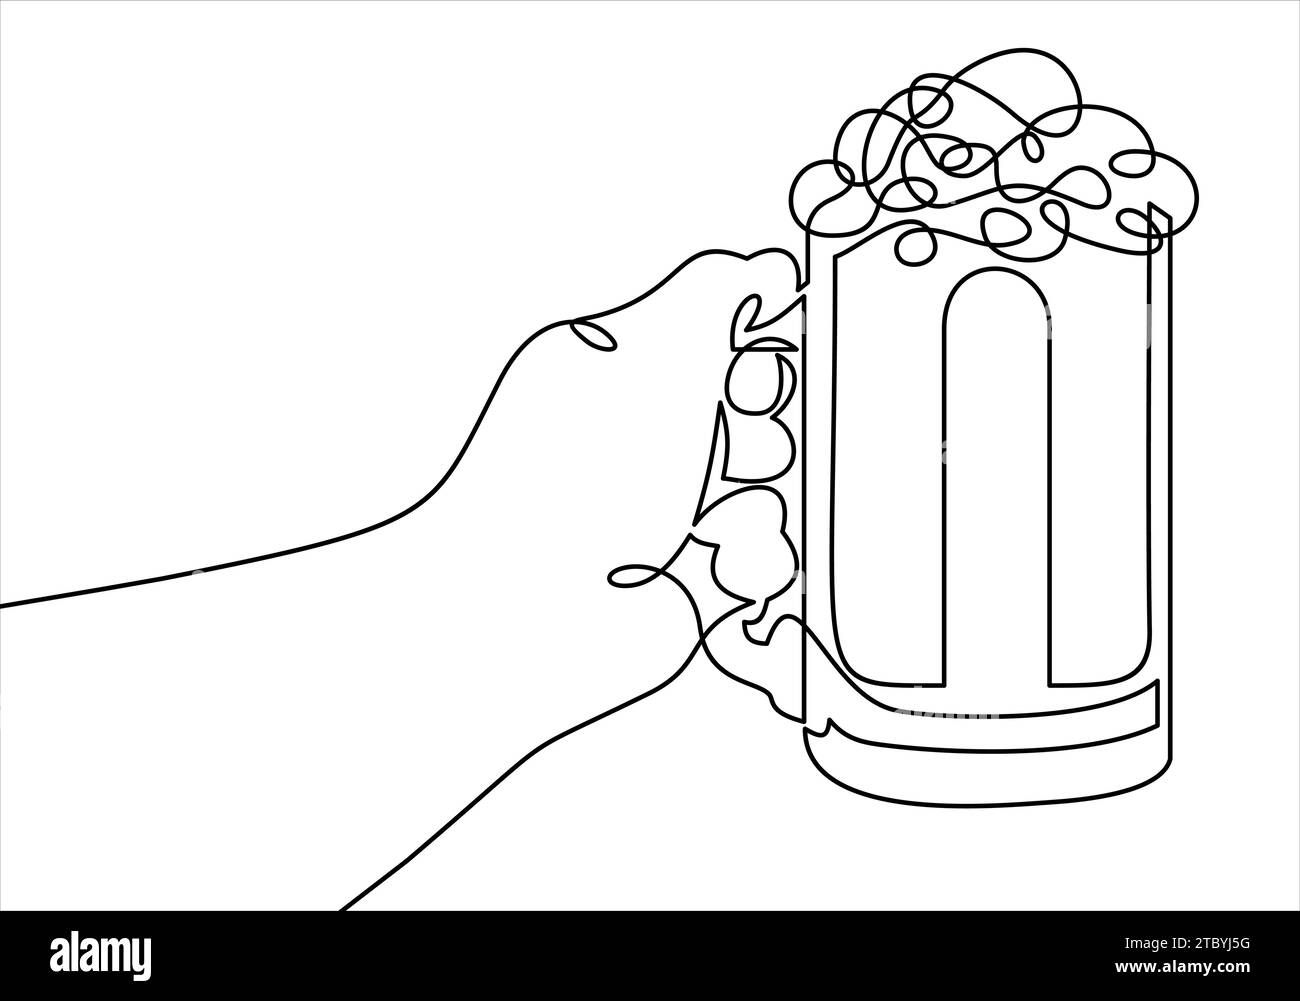 Linea continua del bicchiere di birra che tiene a mano. Illustrazione Vettoriale